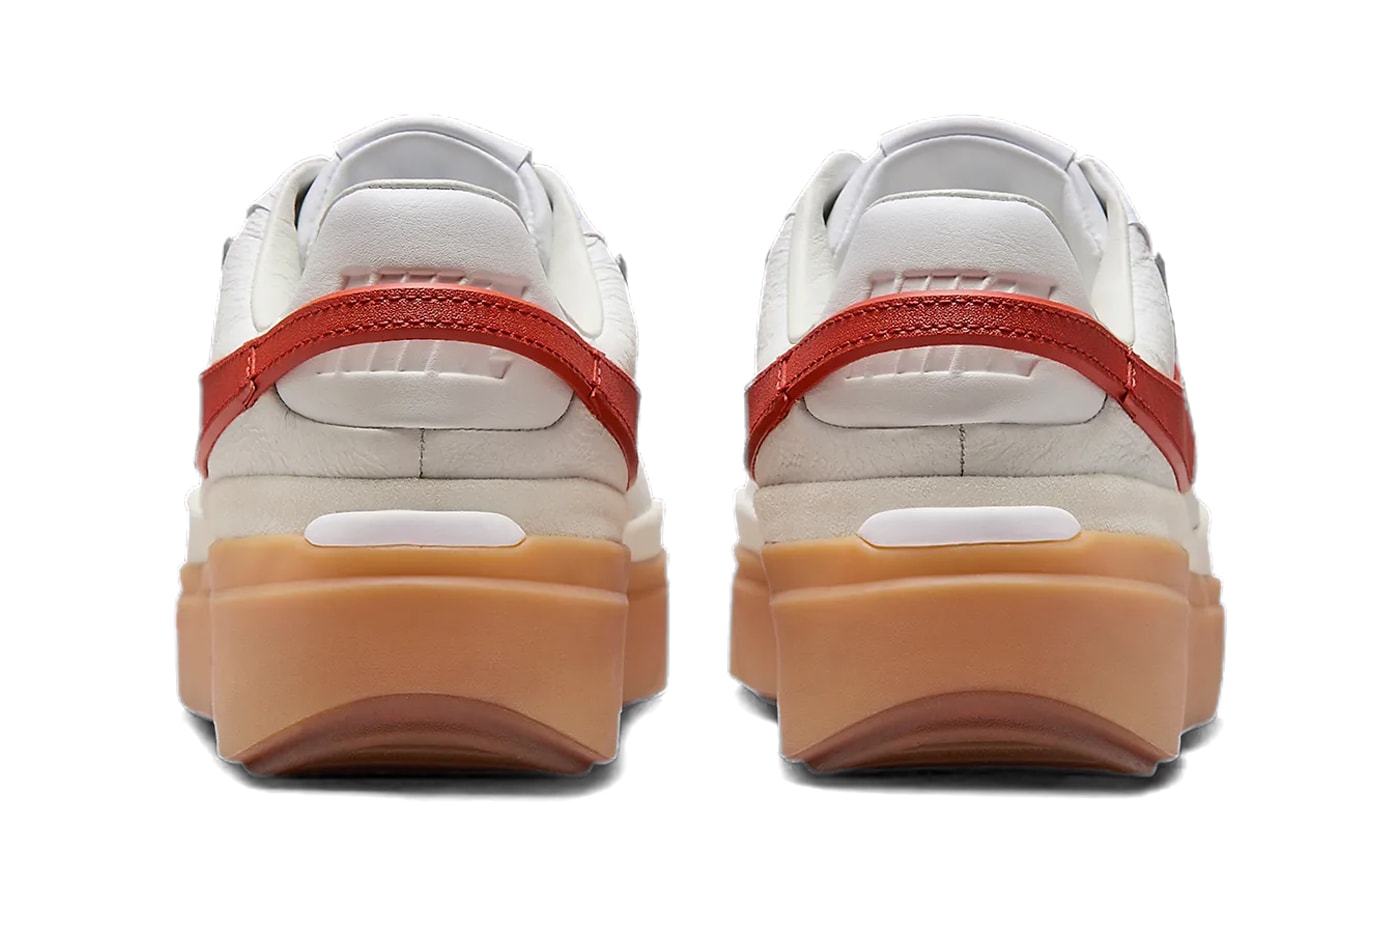 ナイキから立体的なスウッシュを備えた新型モデル ブレザーファントムローが登場 Official Look Nike Blazer Phantom Low in "White/Red" FN5820-100 goddess of victory low-top shoes hangtag sneakers